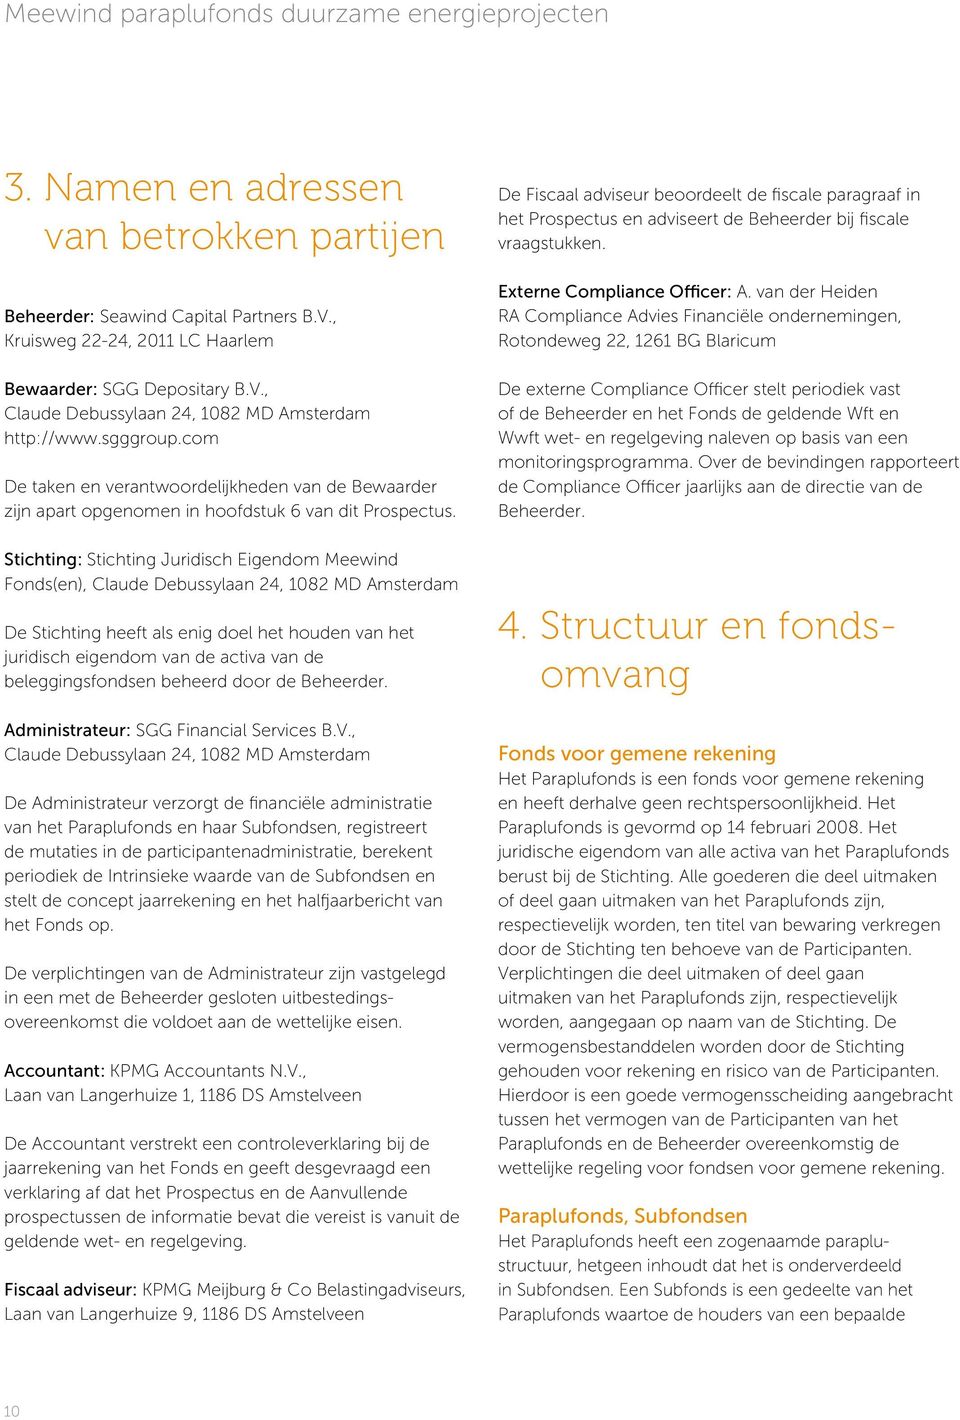 Stichting: Stichting Juridisch Eigendom Meewind Fonds(en), Claude Debussylaan 24, 1082 MD Amsterdam De Stichting heeft als enig doel het houden van het juridisch eigendom van de activa van de